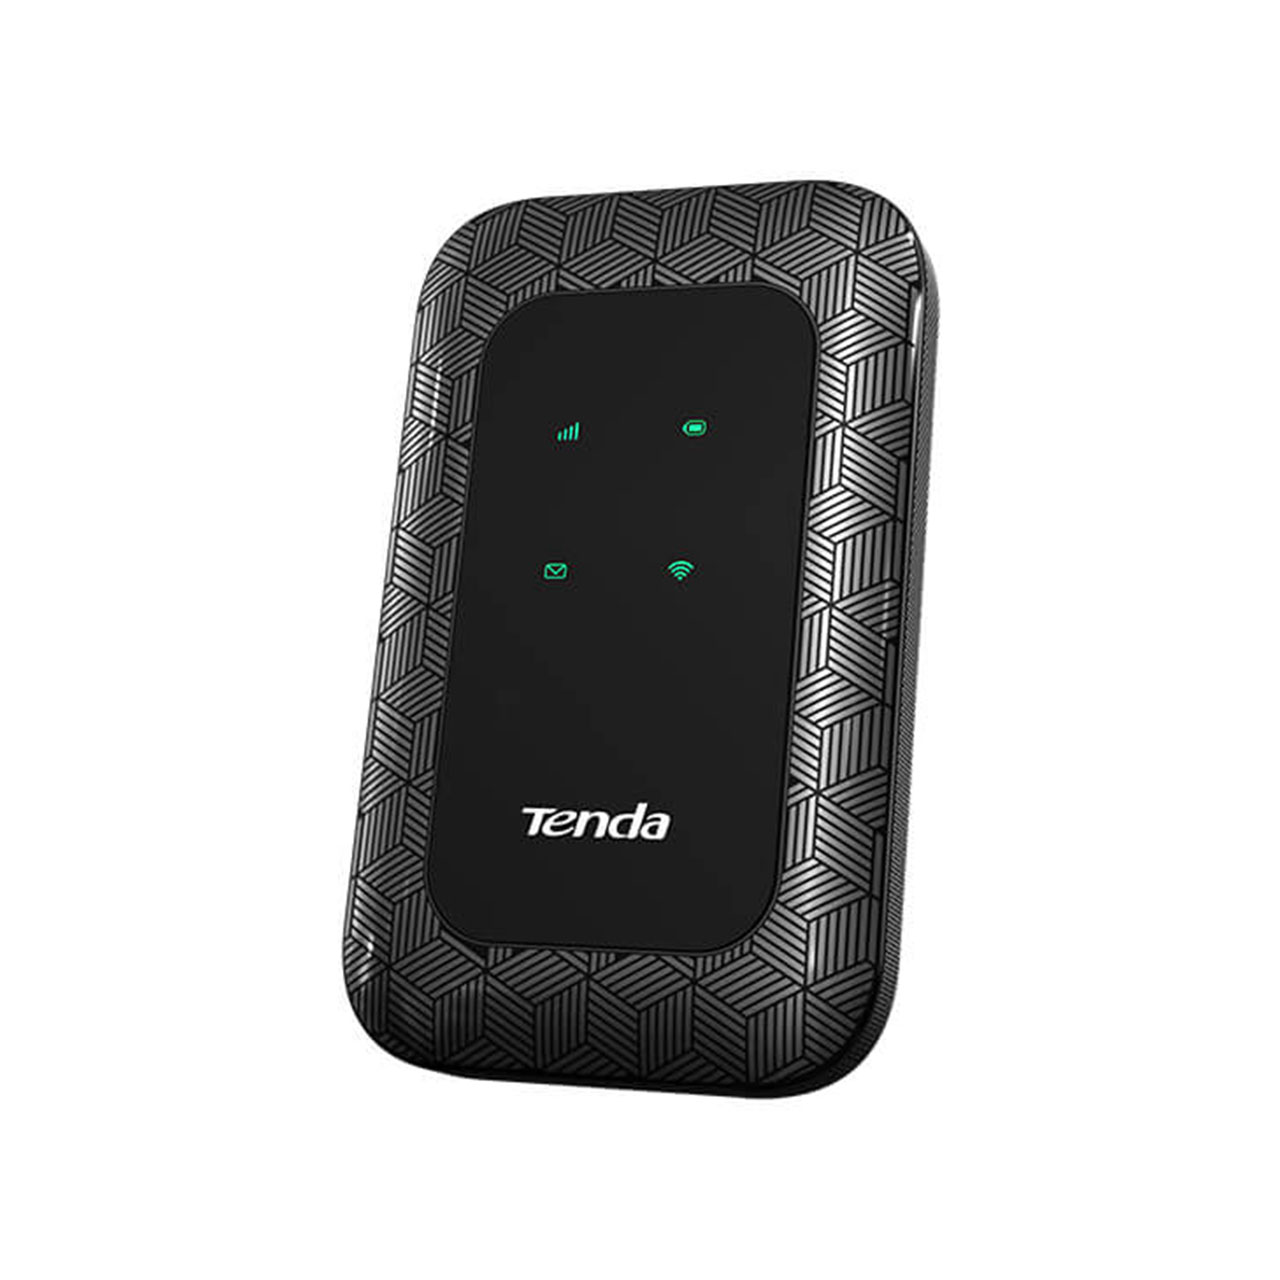 مودم بی سیم همراه تندا Tenda 4G LTE Mobile Router 4G180